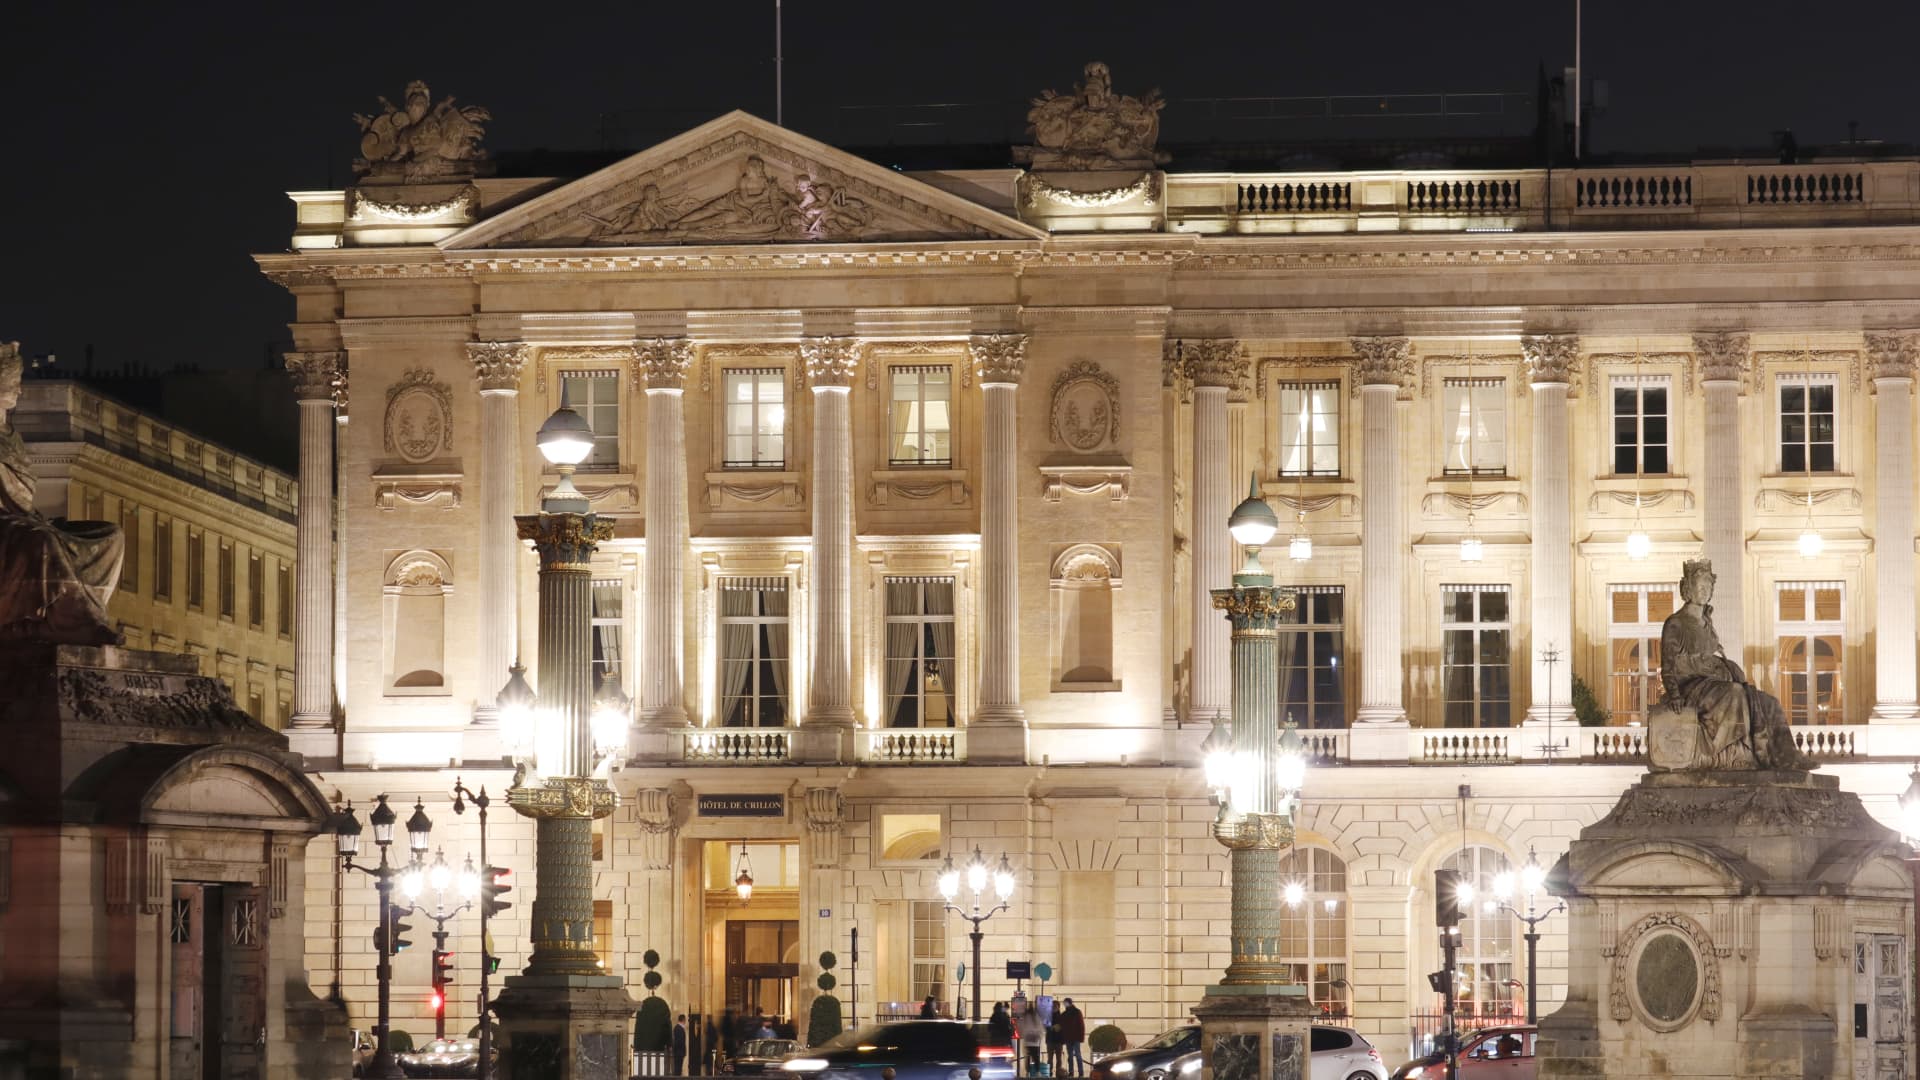 The Crillon hotel, Paris, seen from La Place de la Concorde.